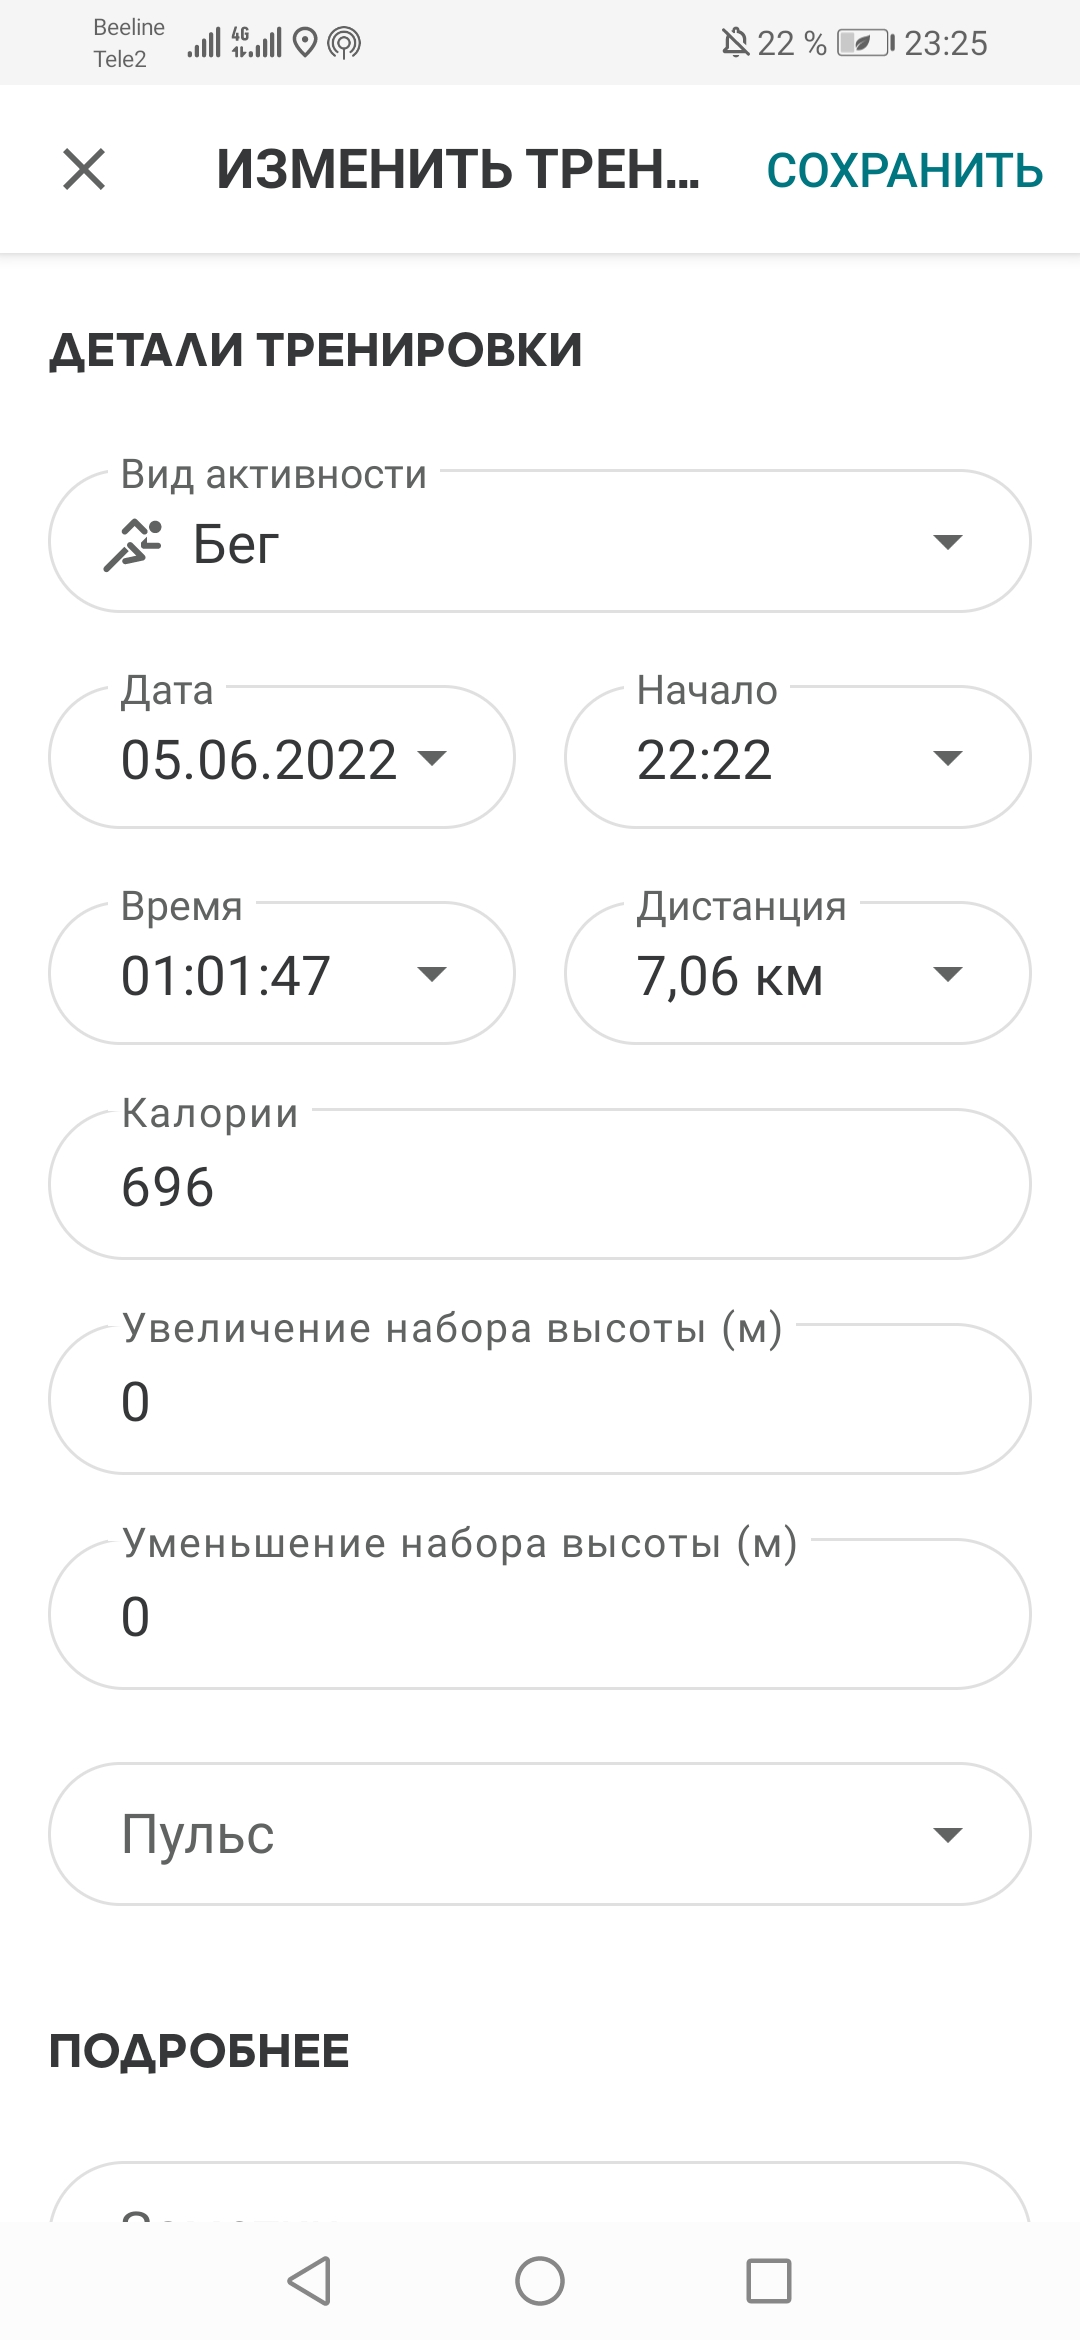  Загрузка от 05.06.2022 00:00:00 Евдокимова Светлана 